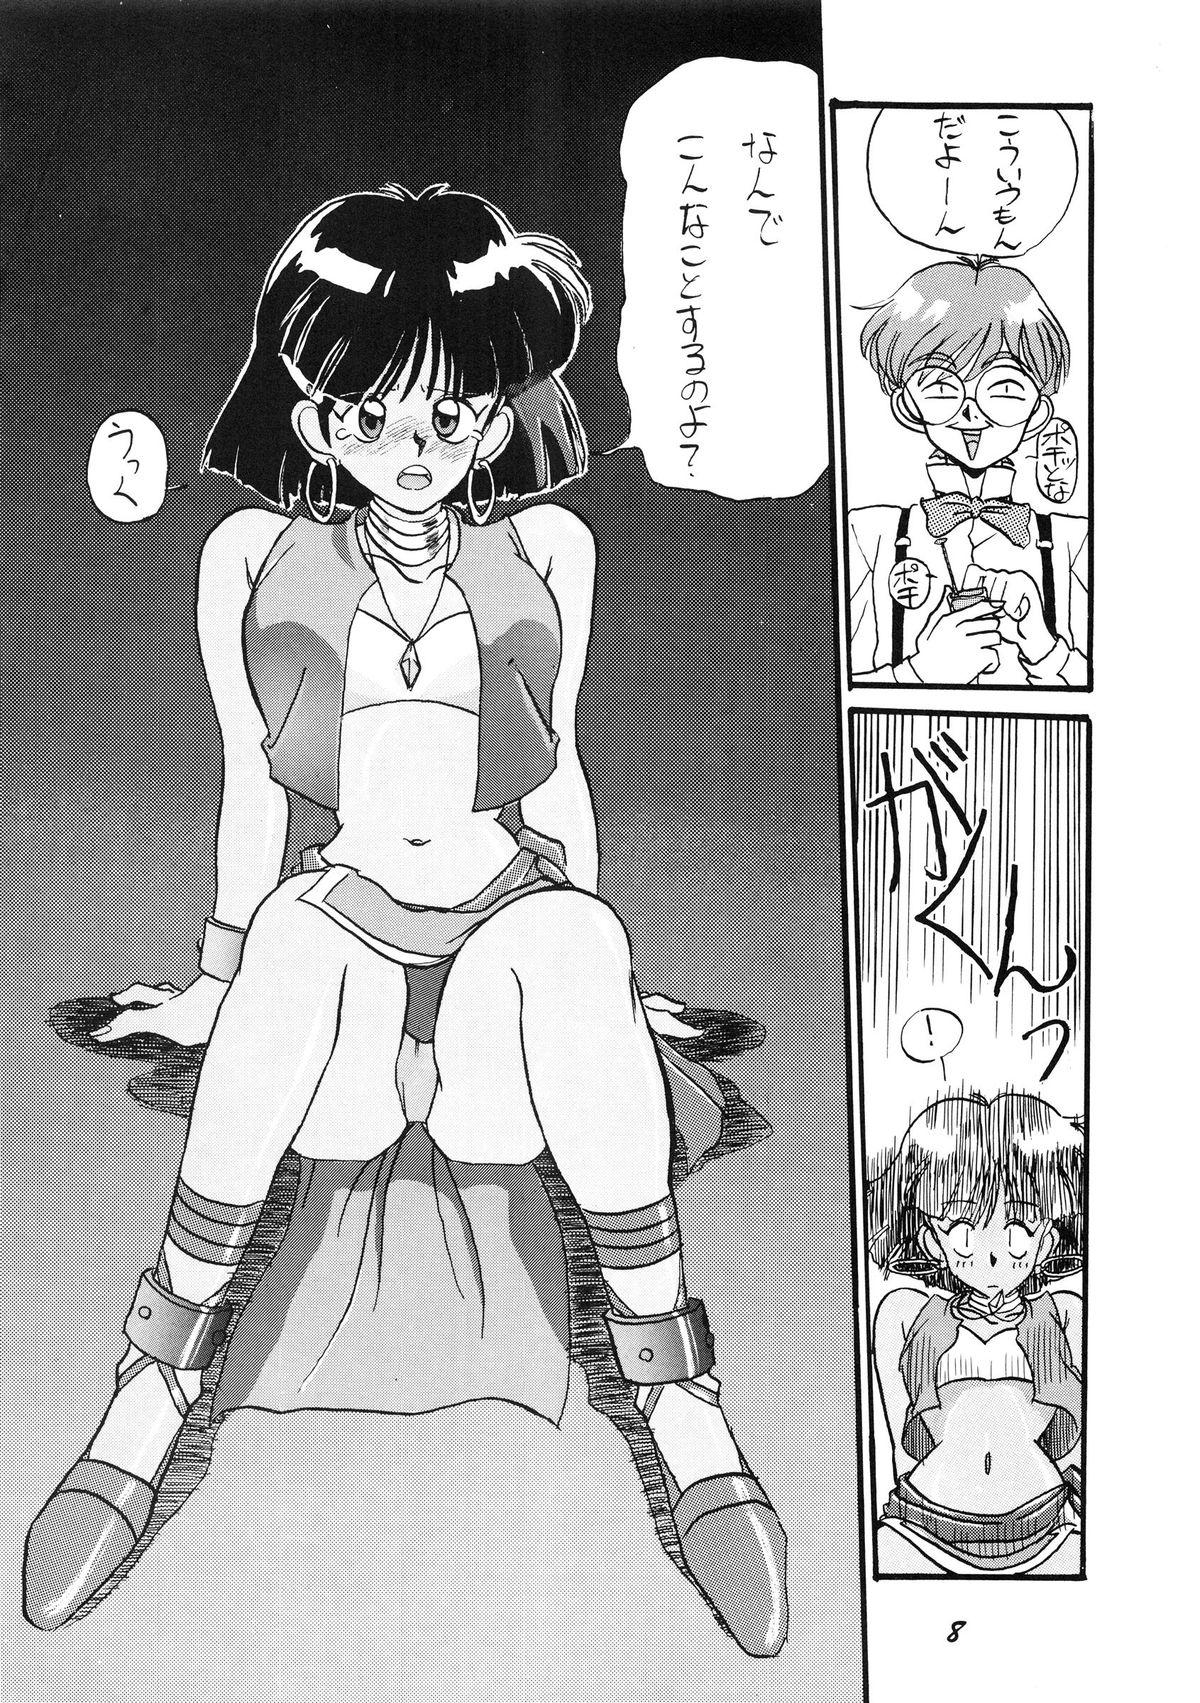 Letsdoeit PUSSY CAT Vol.19 Nadia Hon 2 - Fushigi no umi no nadia Record of lodoss war Magical angel sweet mint Novinho - Page 9